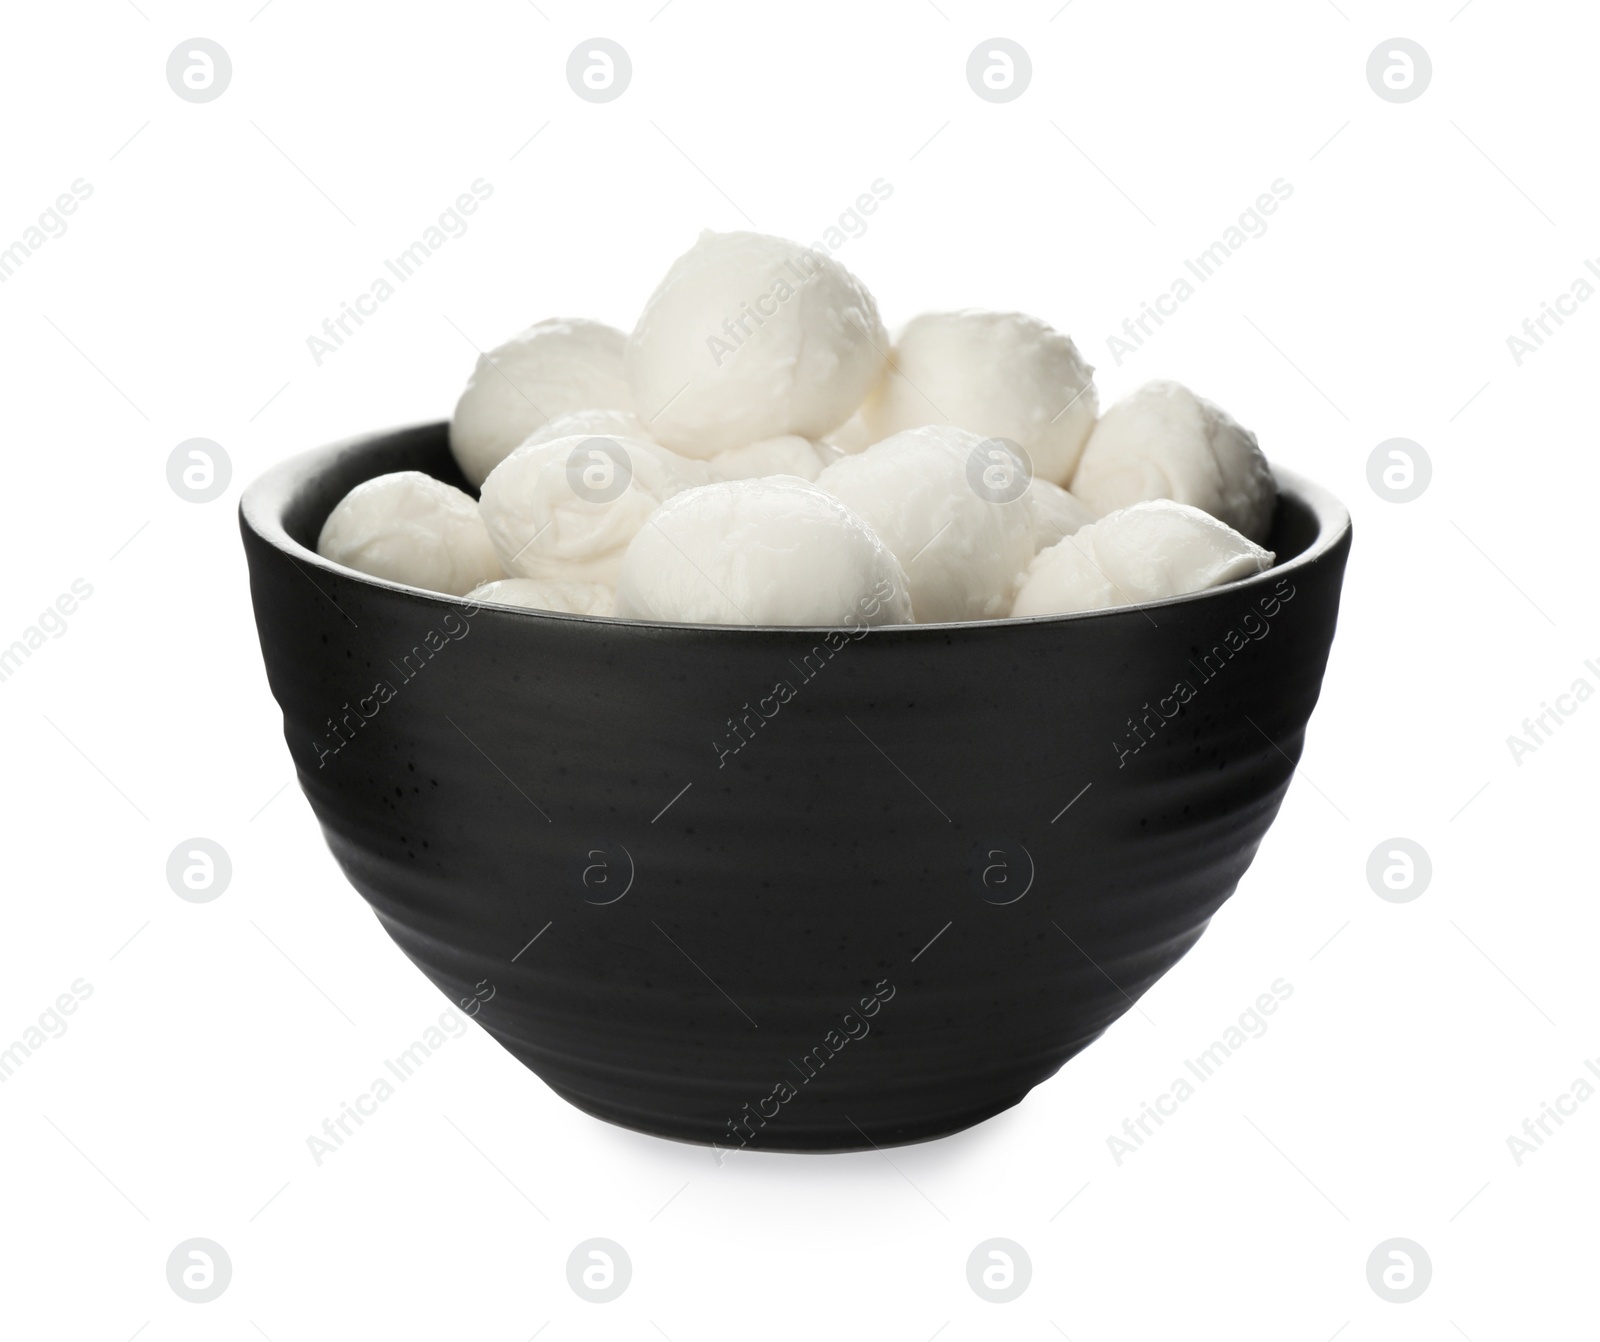 Photo of Bowl with mozzarella cheese balls on white background